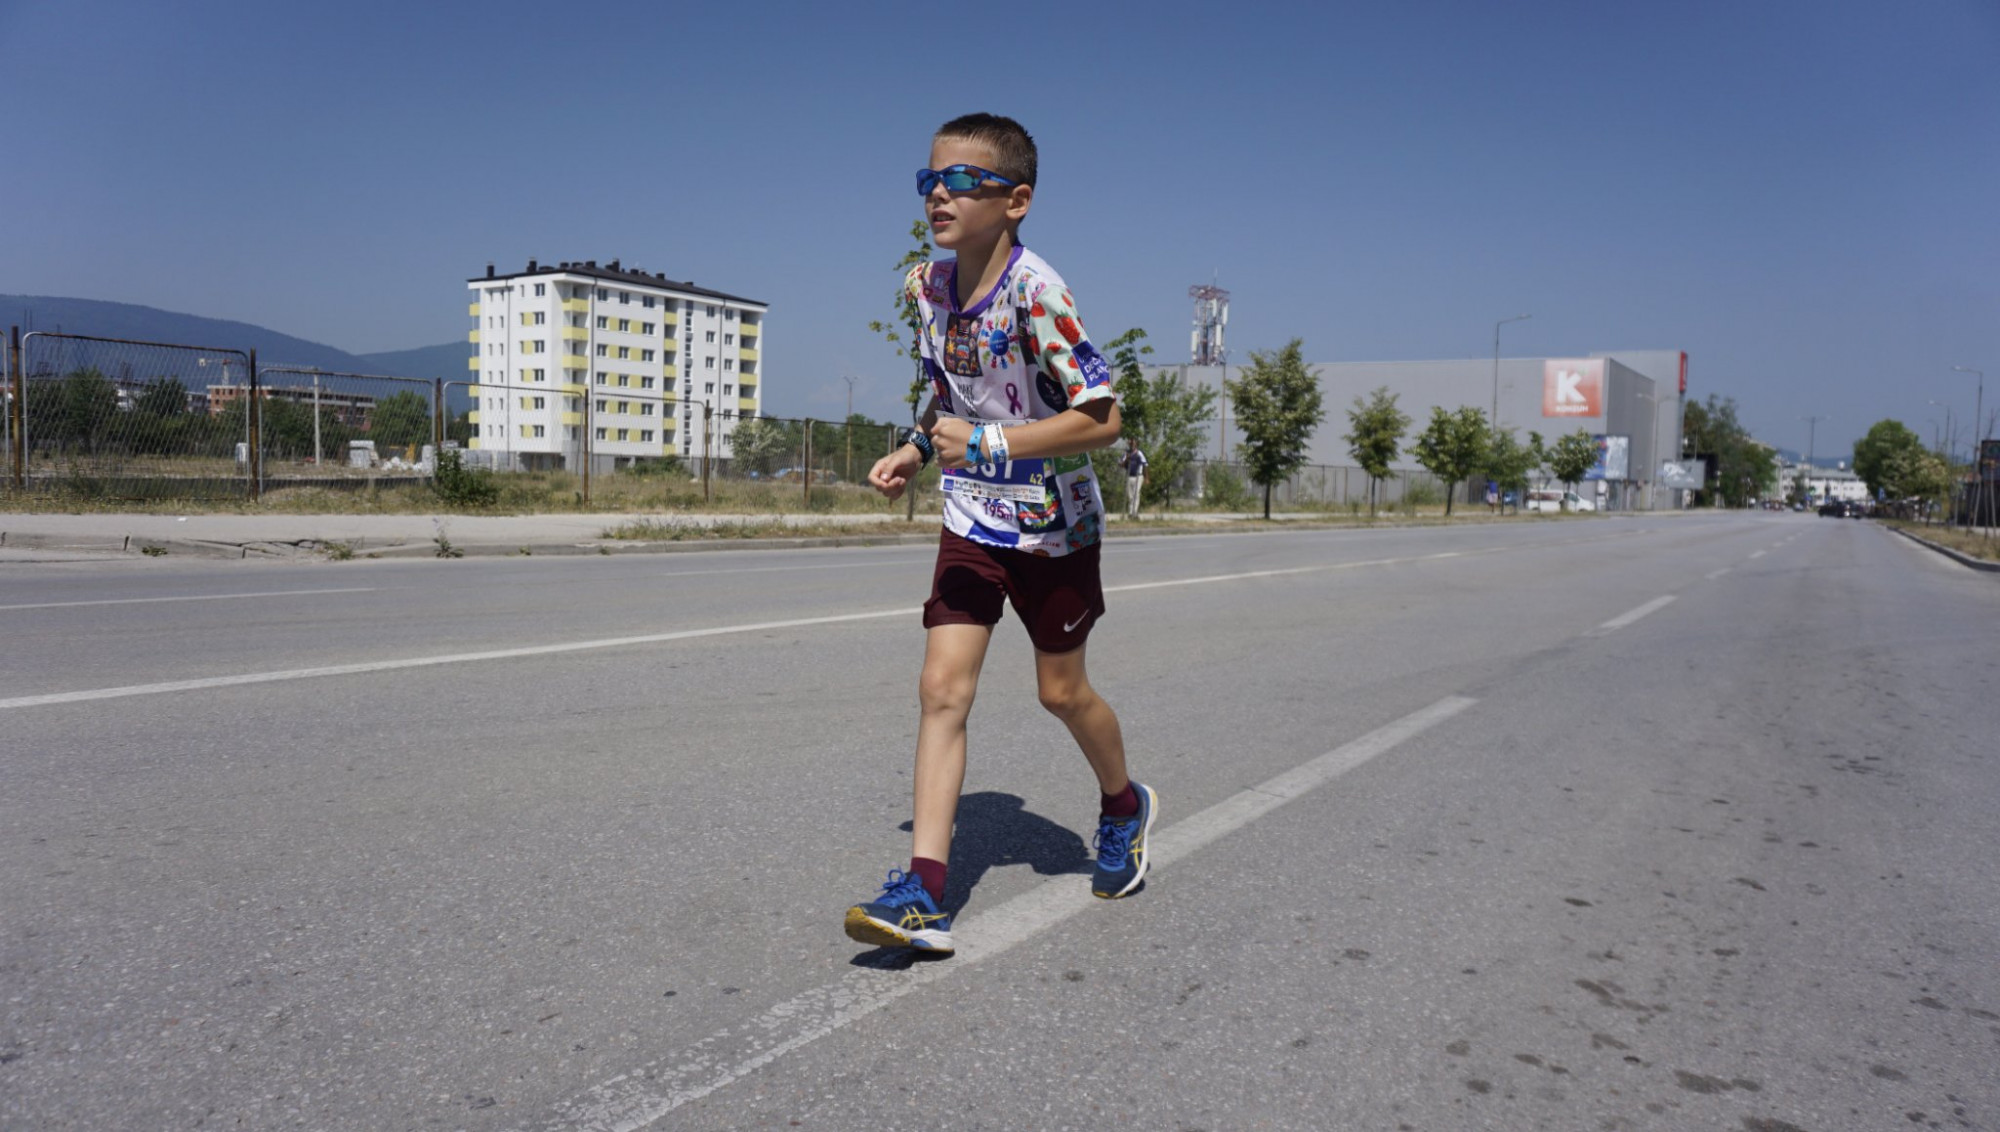 Feljelentést tett egy futóedző a szarajevói maratont lefutó Lóci szülei ellen